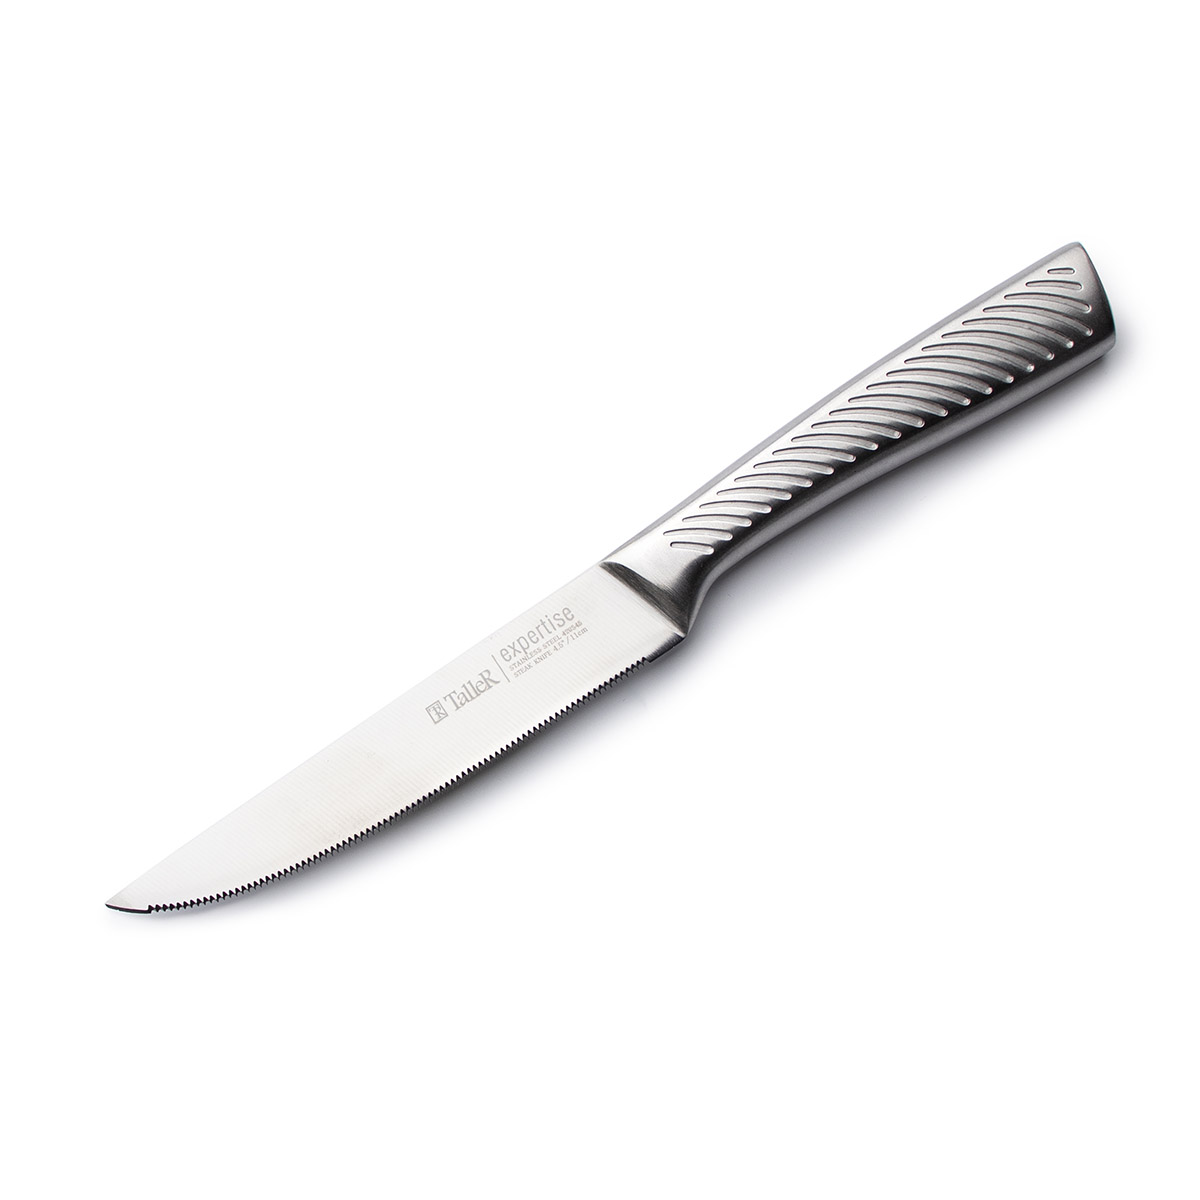 Taller expertise. Taller ножи. Нож для стейка Taller tr-22022.